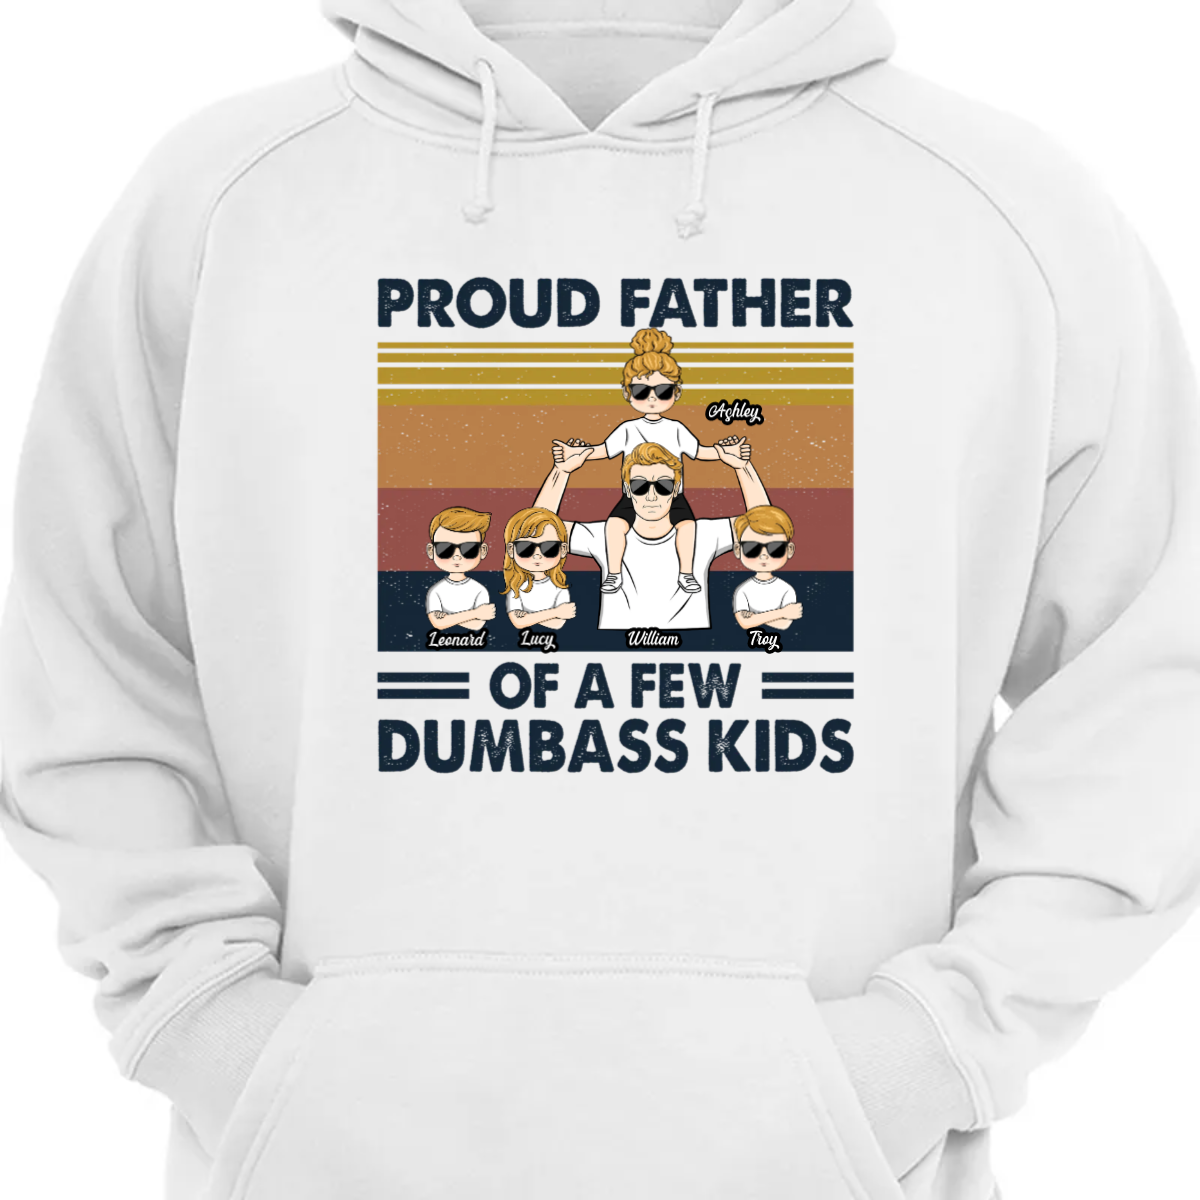 数人の子供の誇り高き父 - 父、父へのギフト - パーソナライズされたカスタム パーカー スウェットシャツ